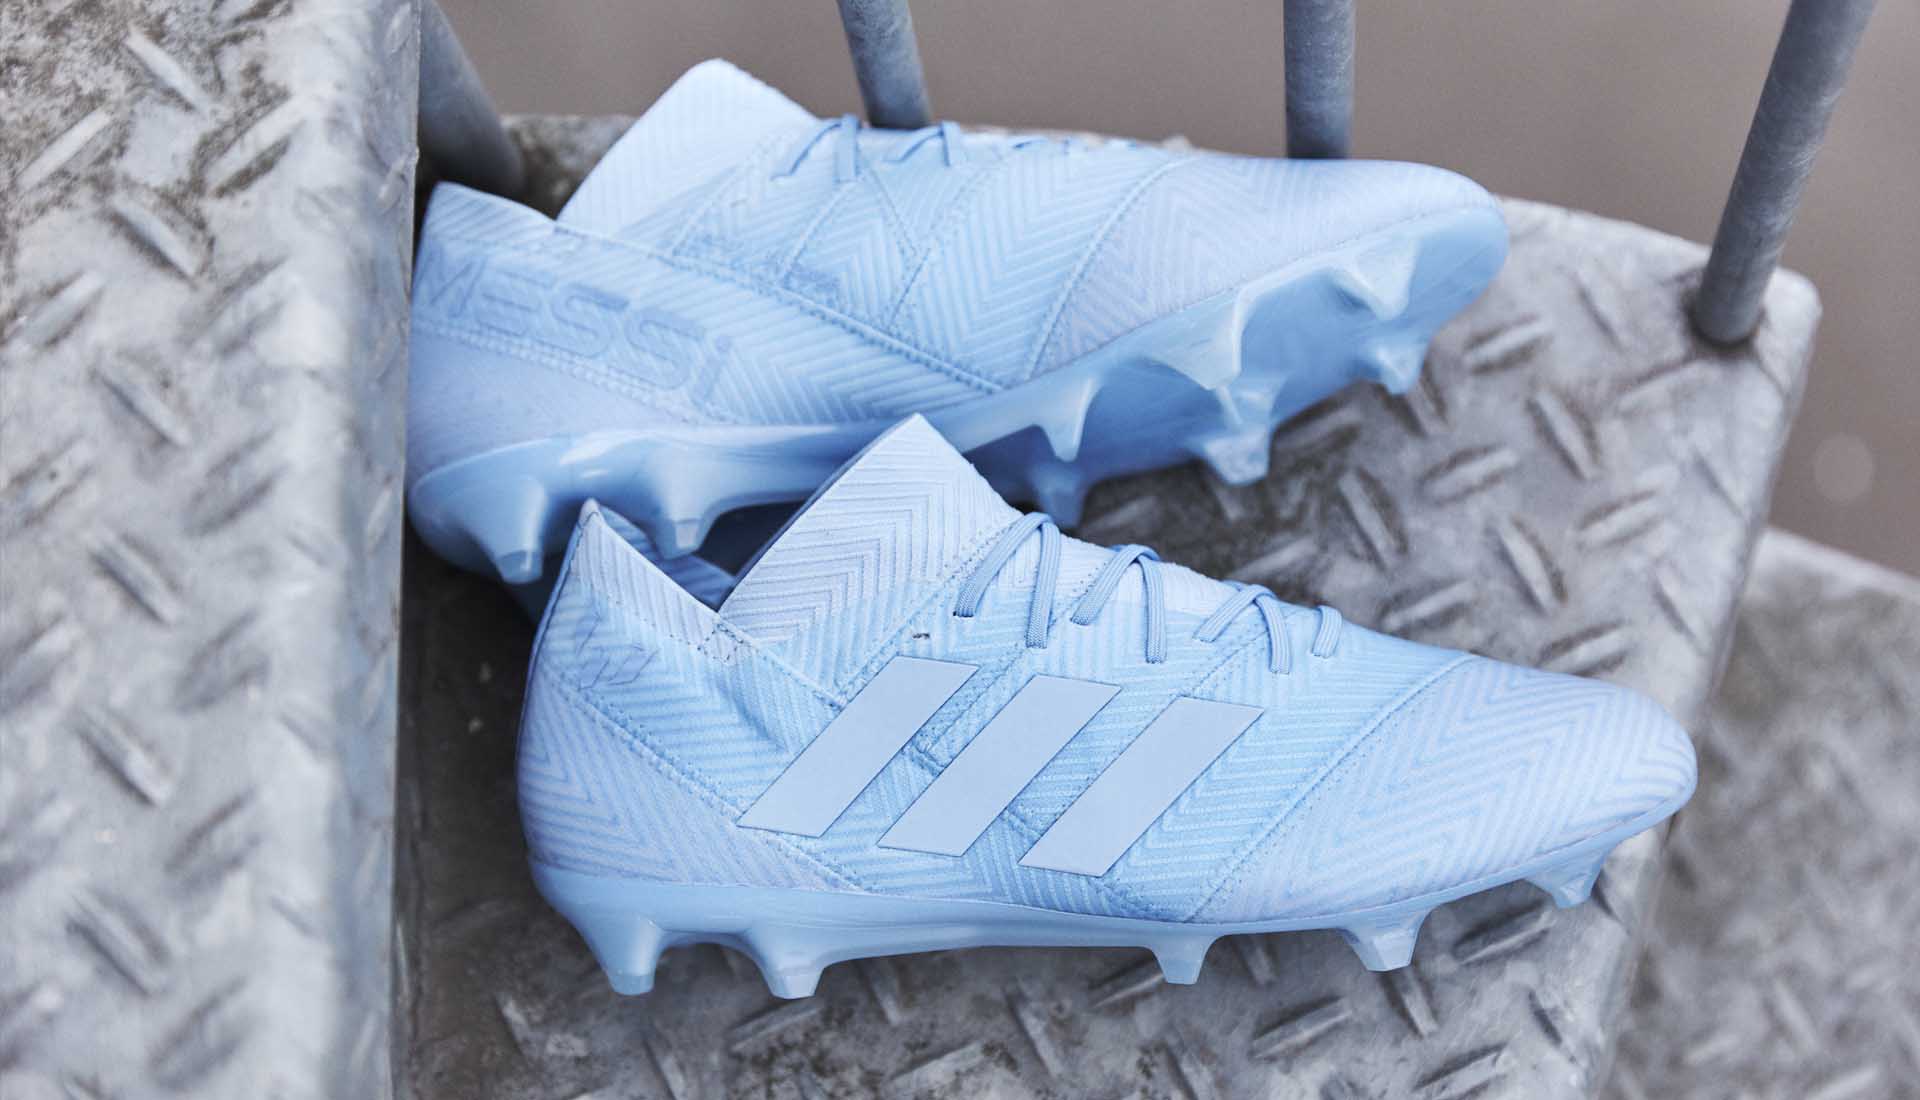 Giày đá banh Adidas Nemeziz Messi 18.1 màu xanh nhạt "Spectral Mode"